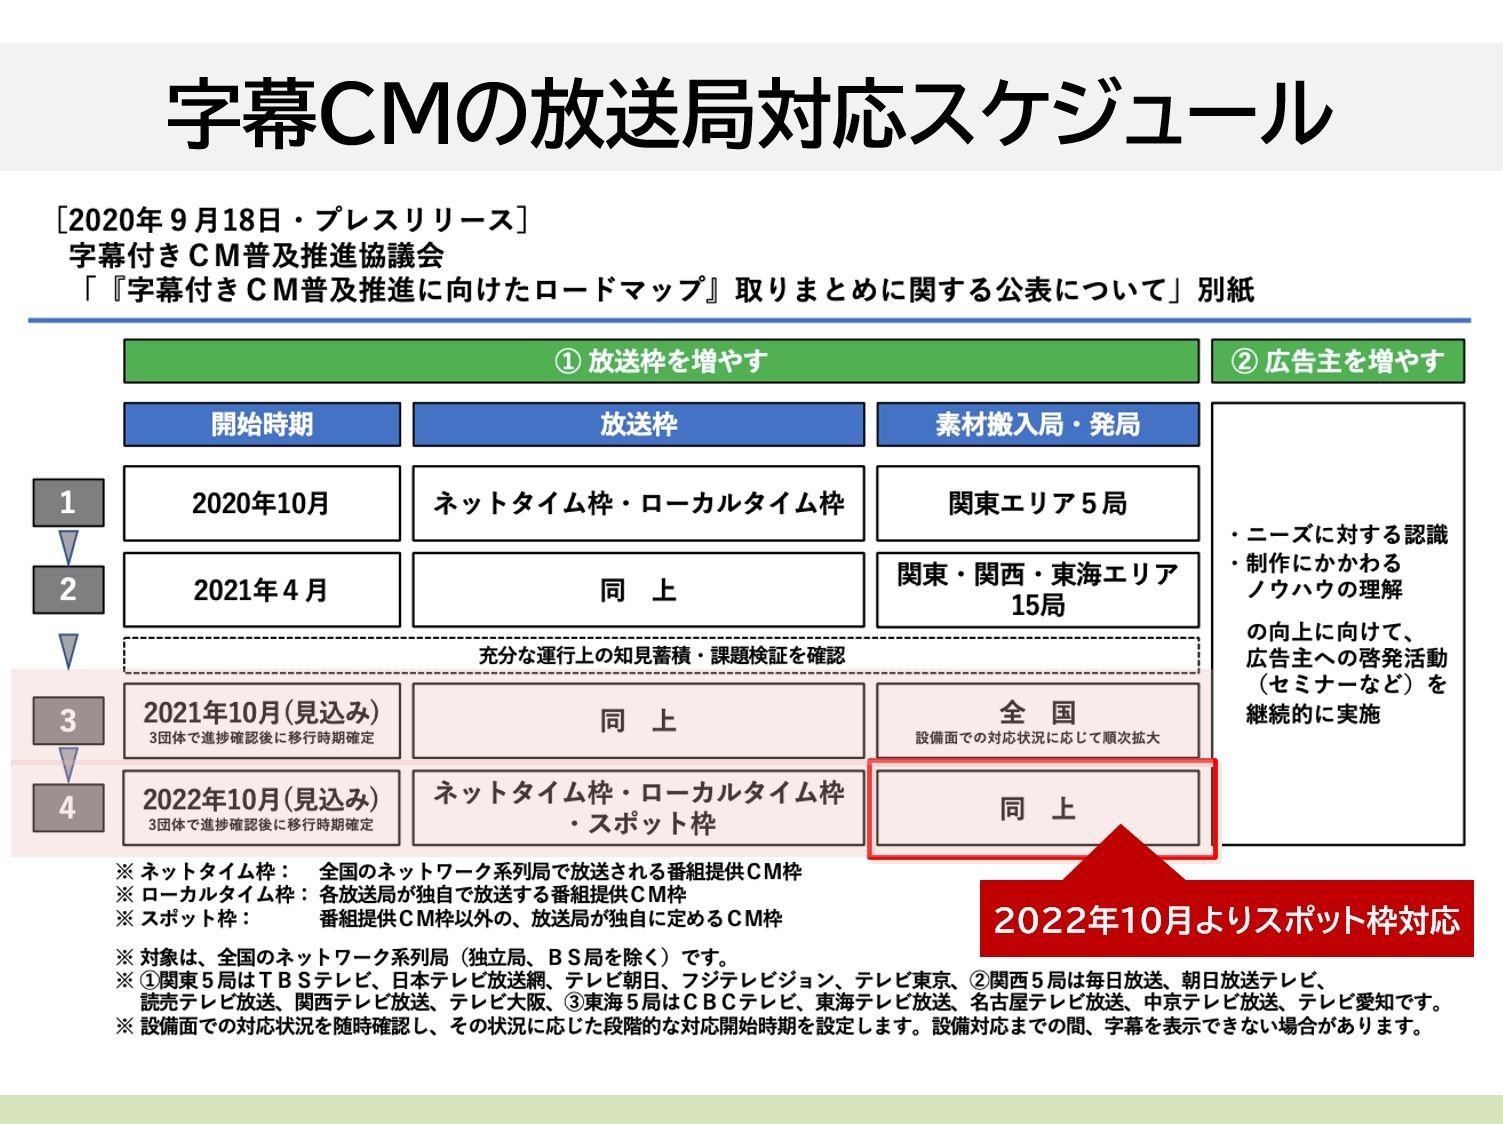 テレビCMのオンライン送稿/字幕付きCMの放送局における対応スケジュール